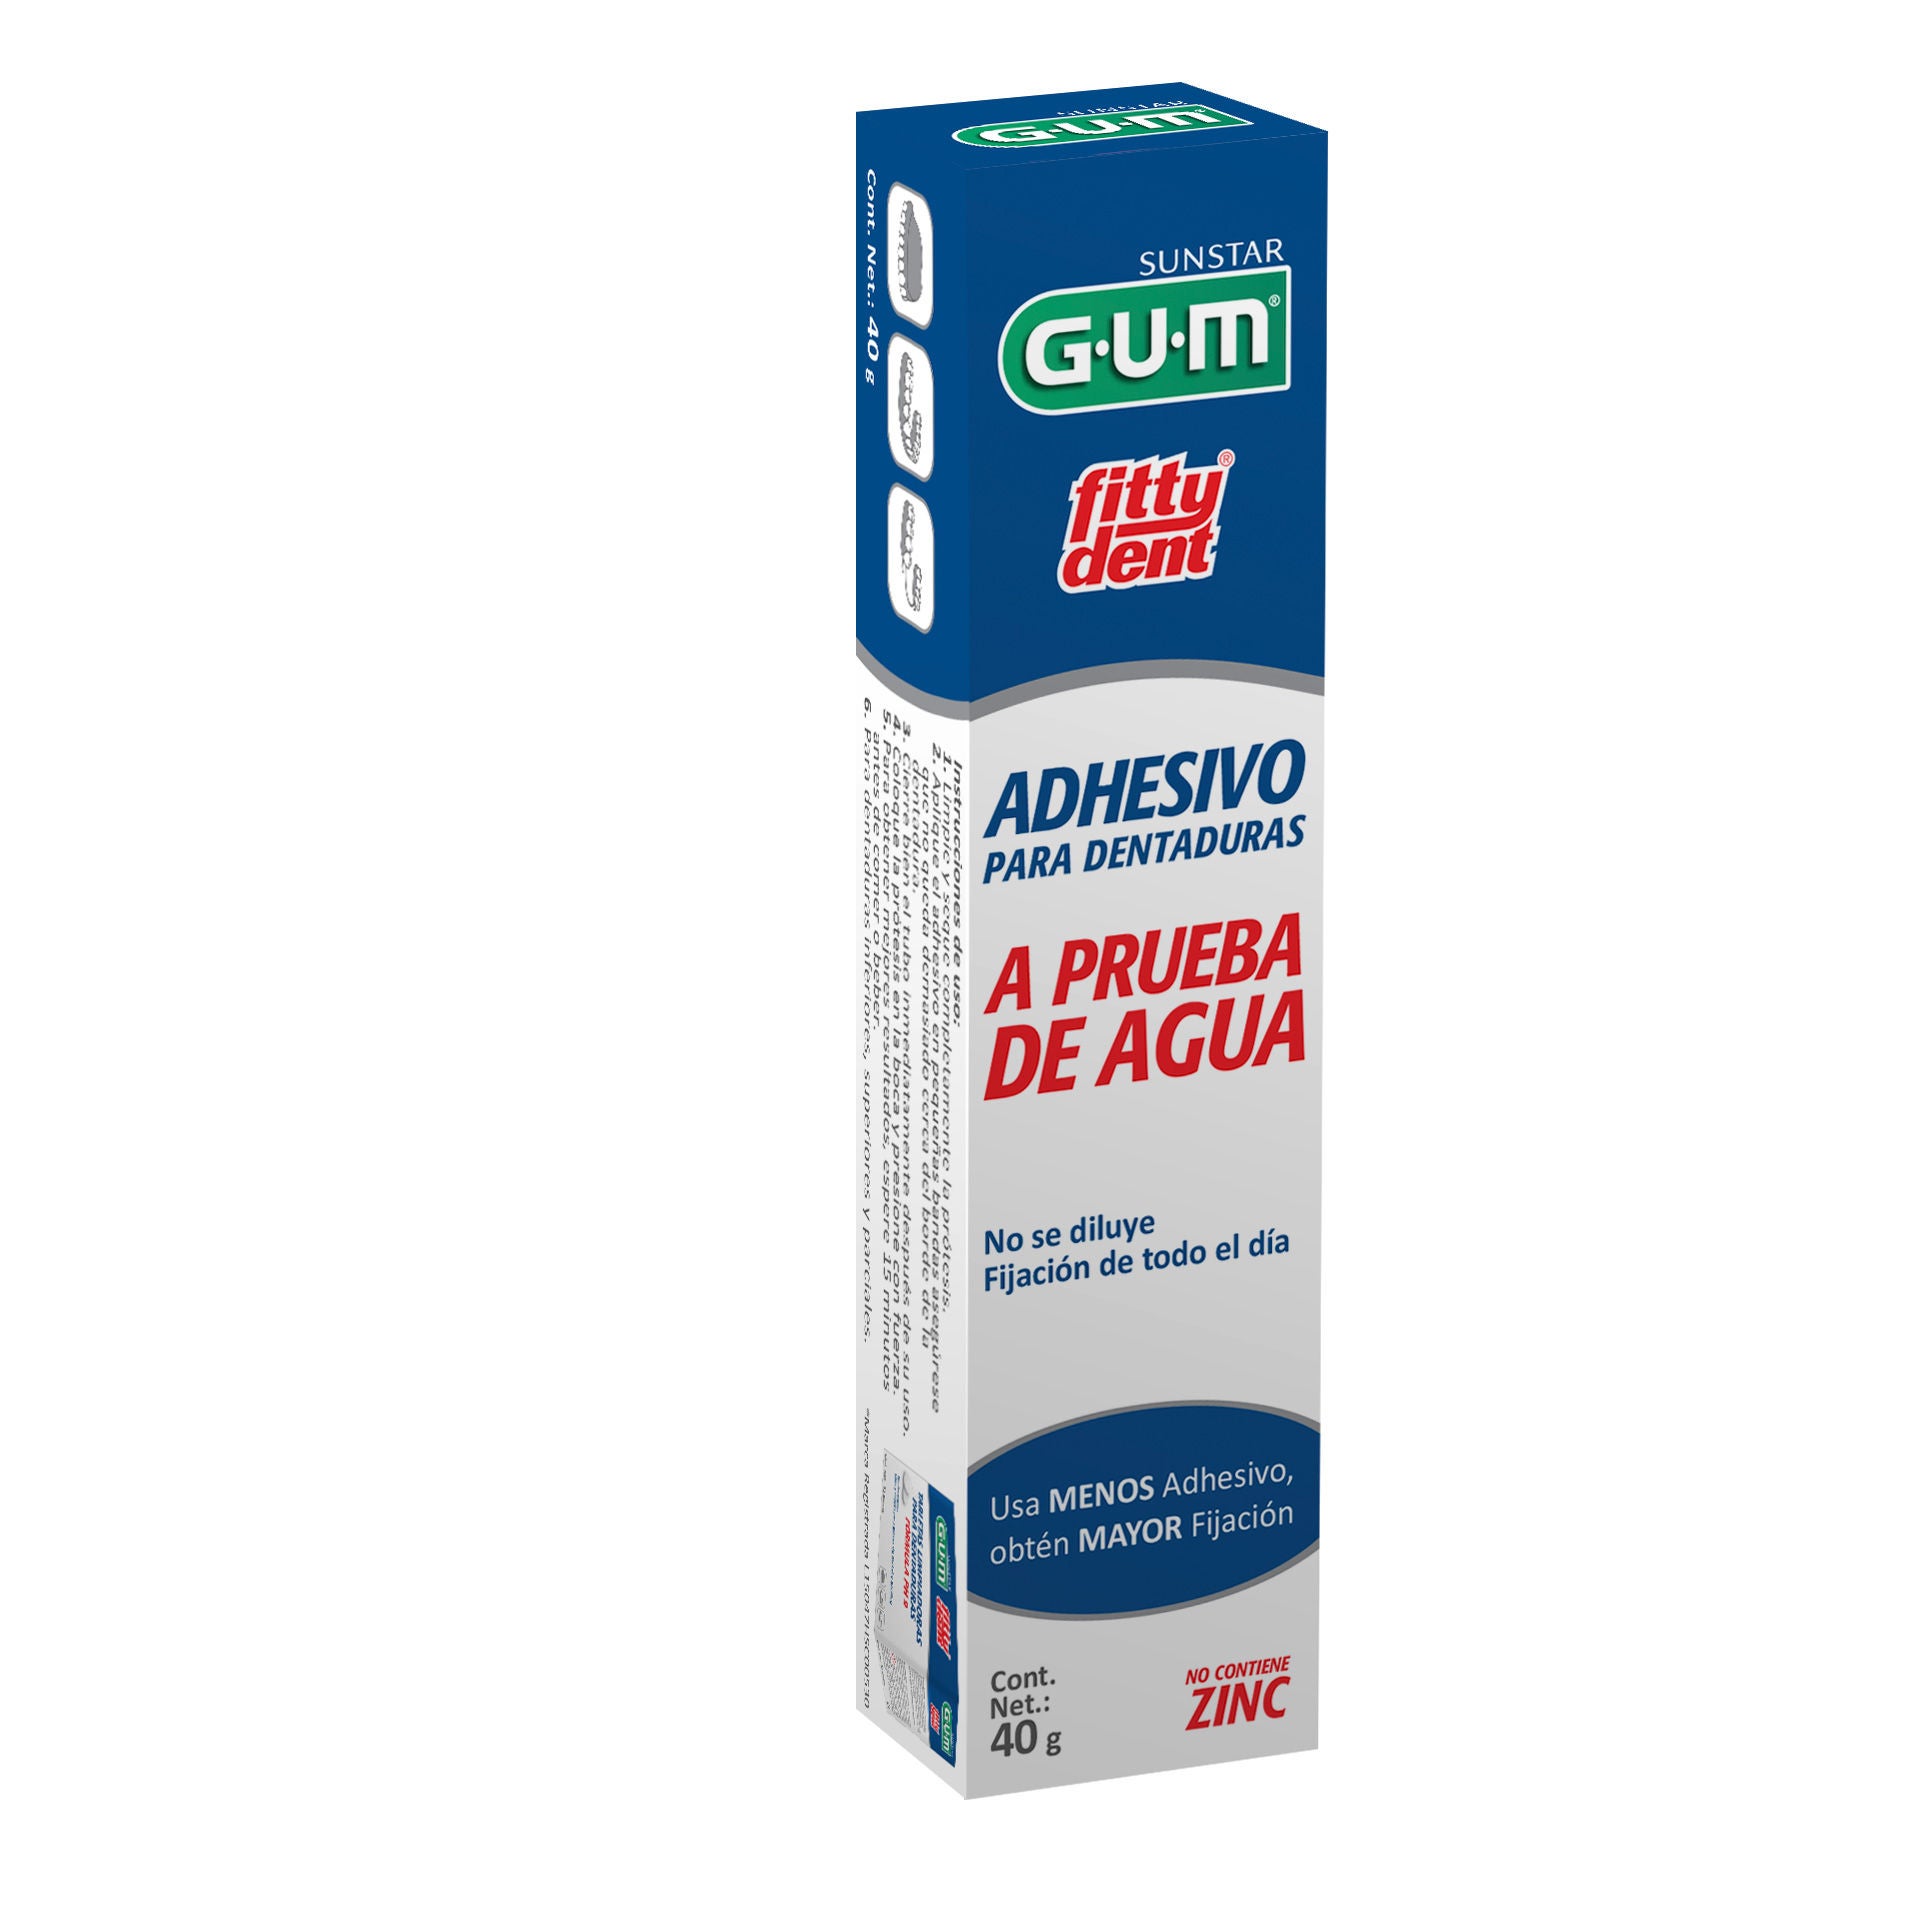 GUM FITTYDENT Adhesivo 40g